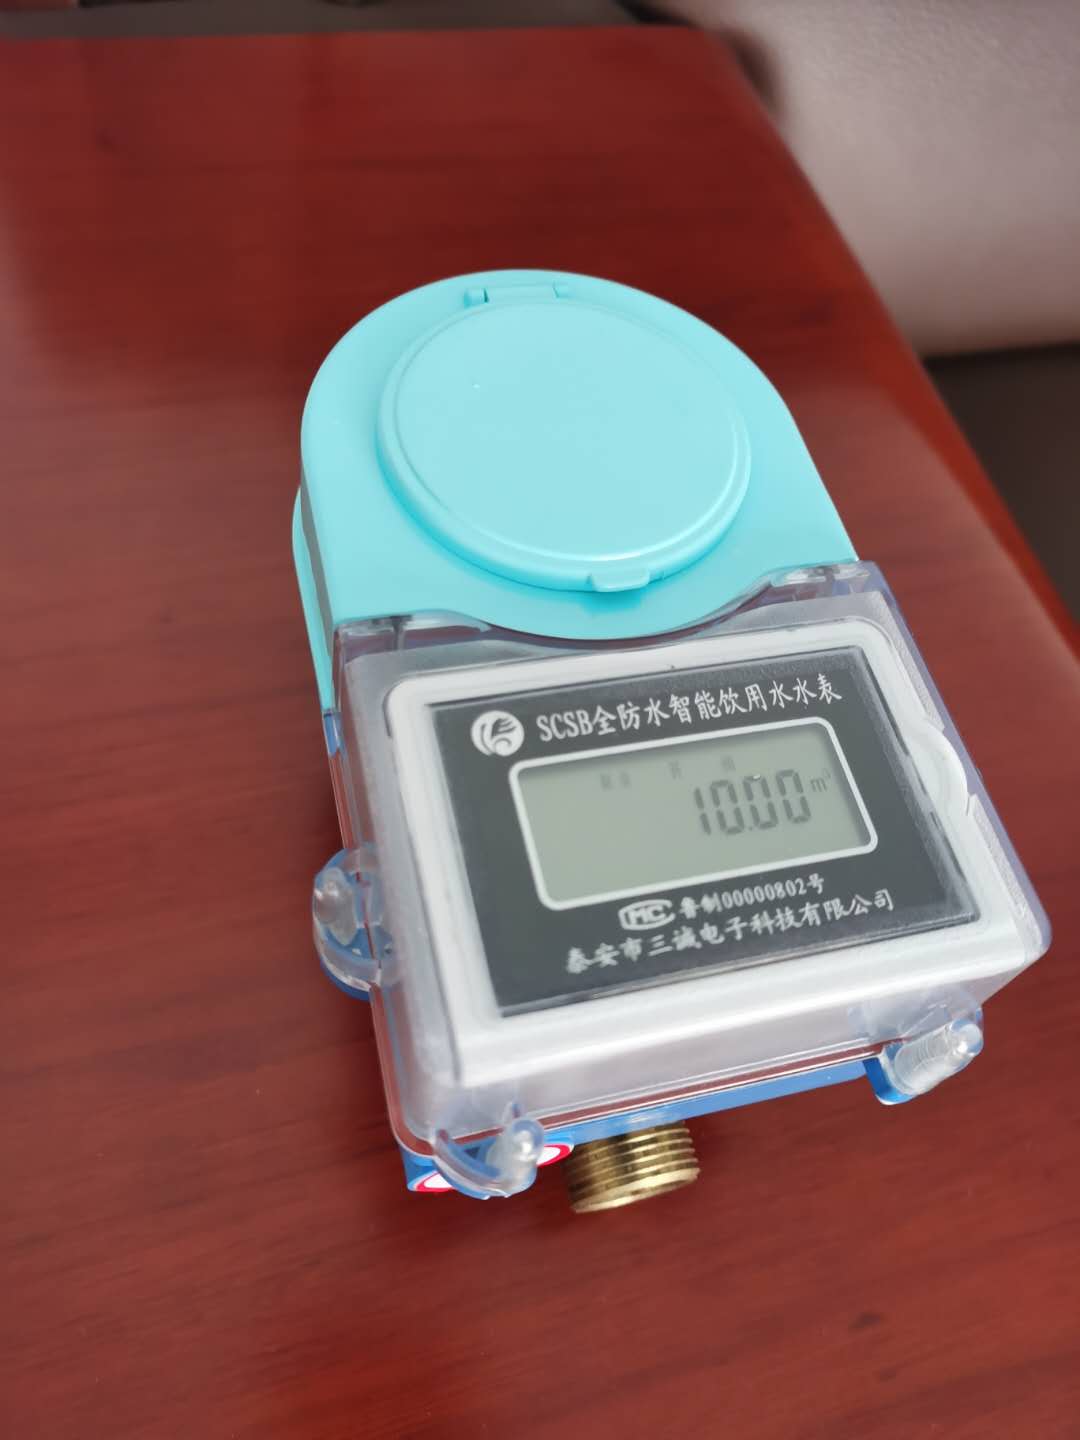 上海山西萬榮縣水利局安裝我公司藍牙水表